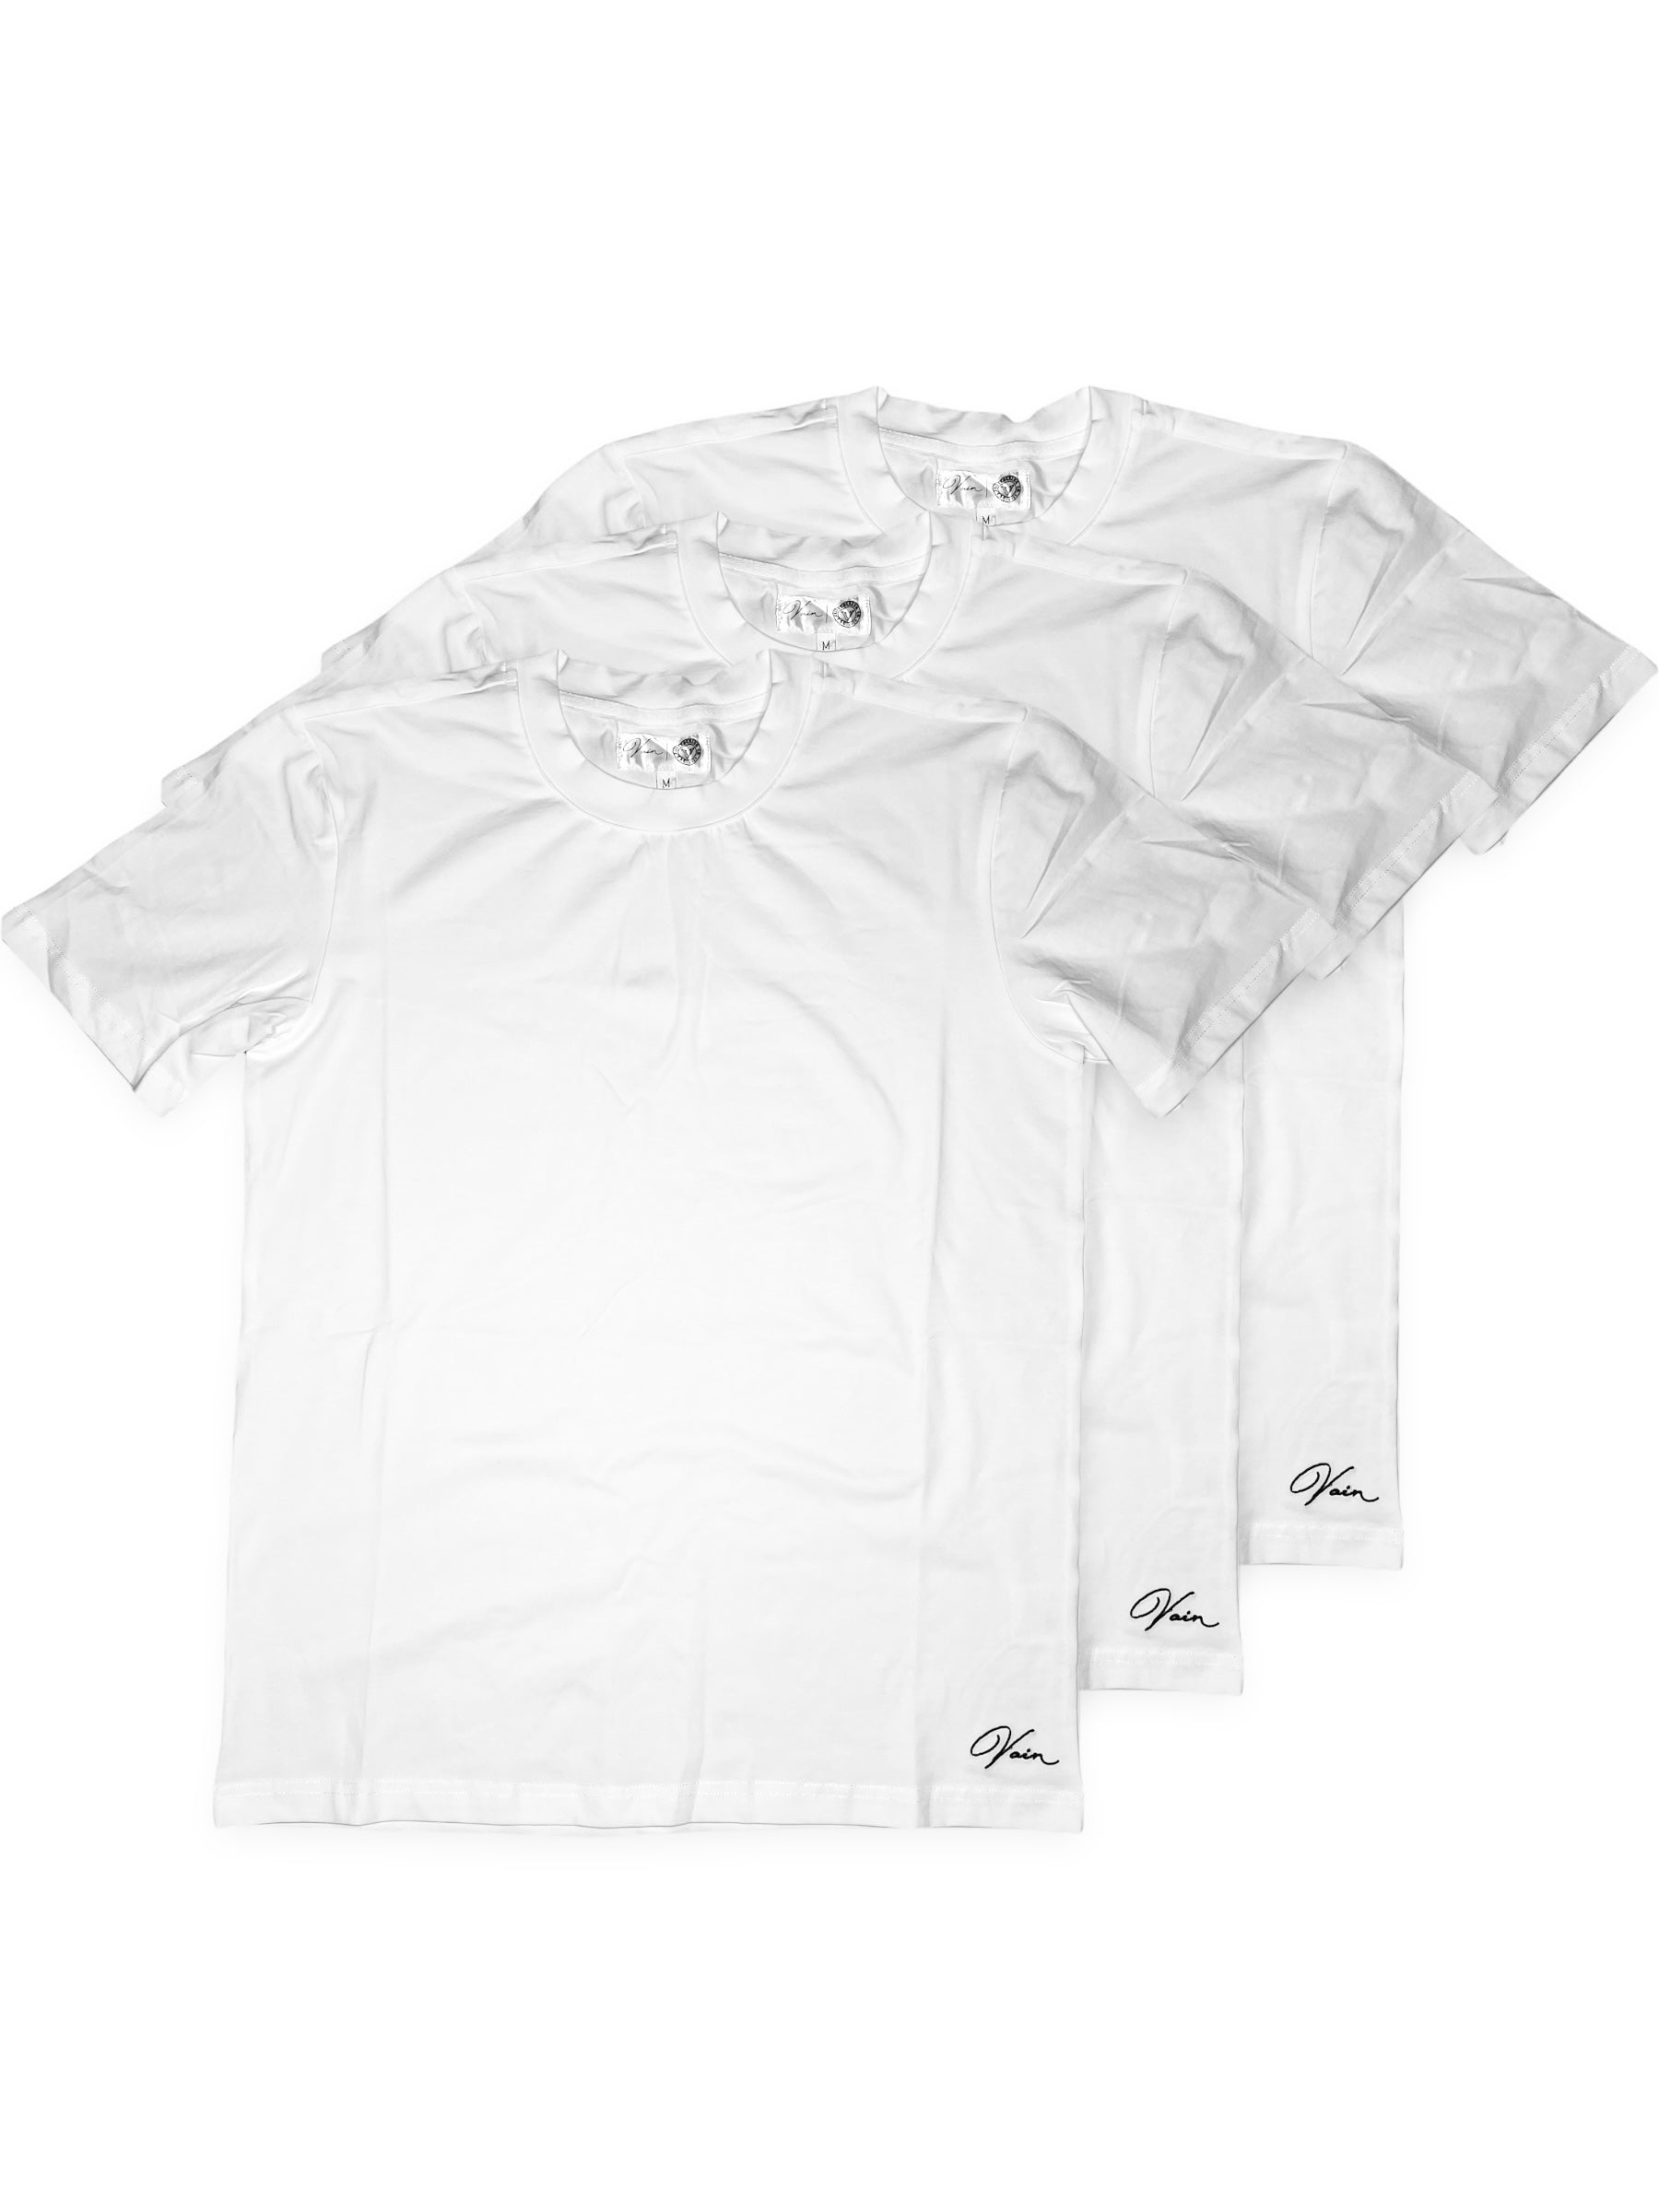 Men's 3 Pack Premium Essentials T-Shirts, Black